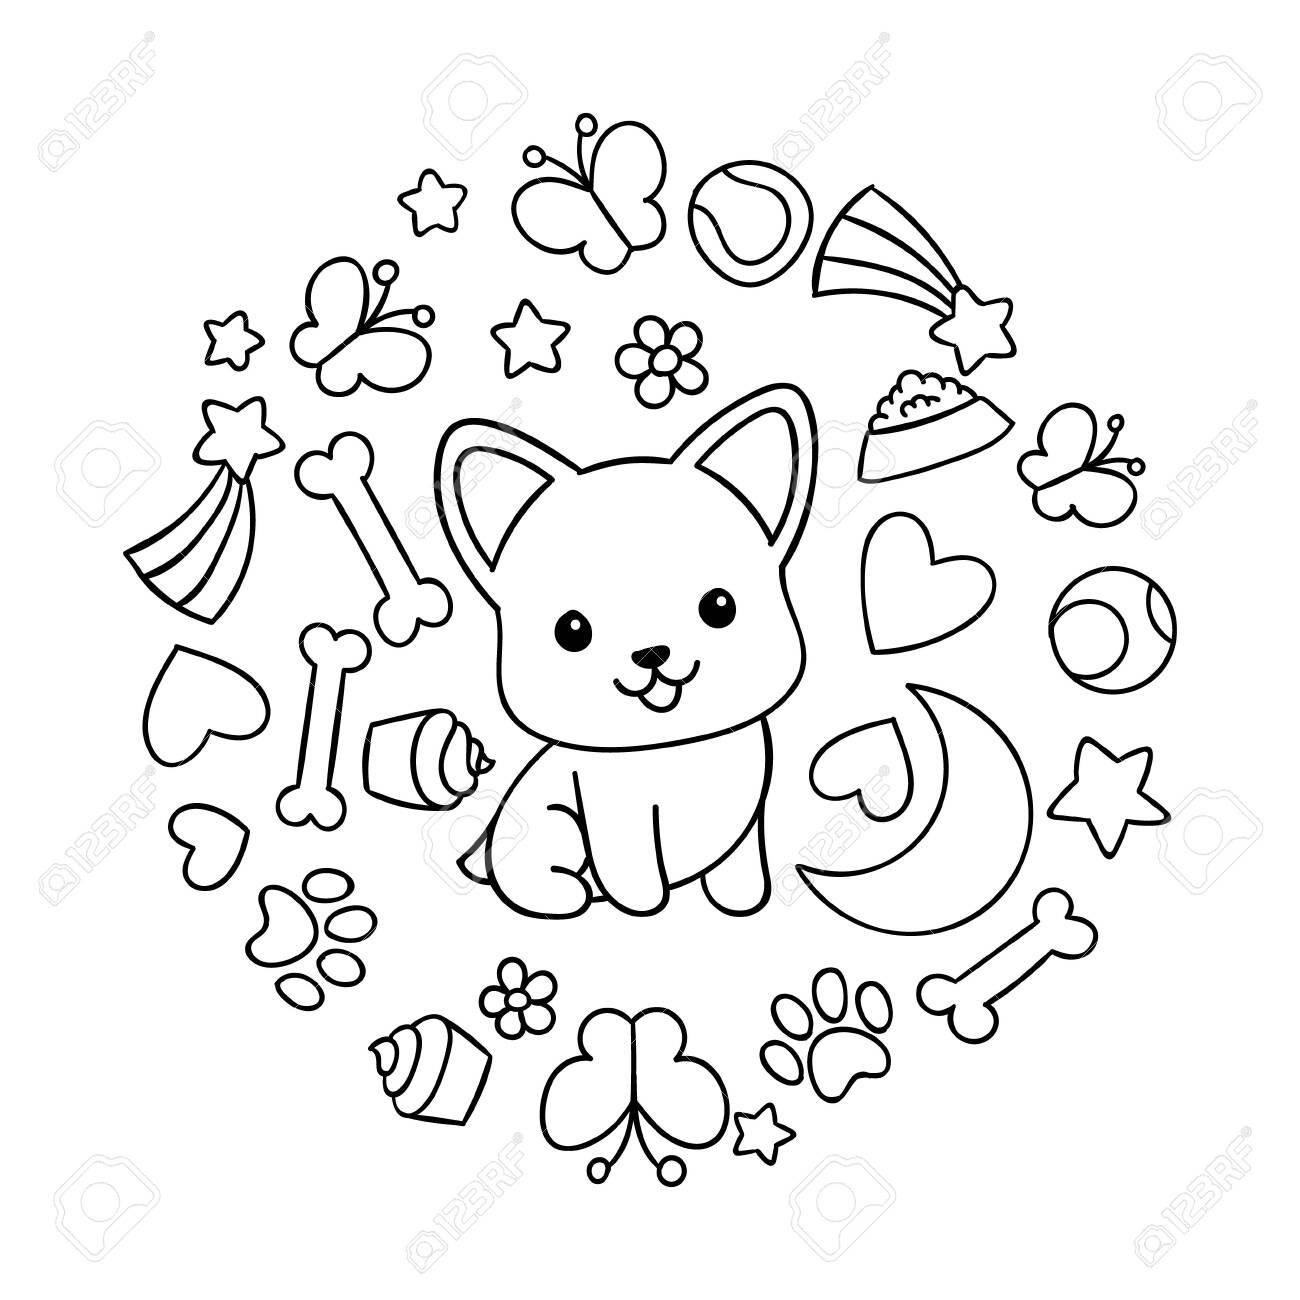 Coloring pages black and white cute kawaii hand drawn corgi dog doodles circle print print royalty free svg cliparts vectors and stock illustration image